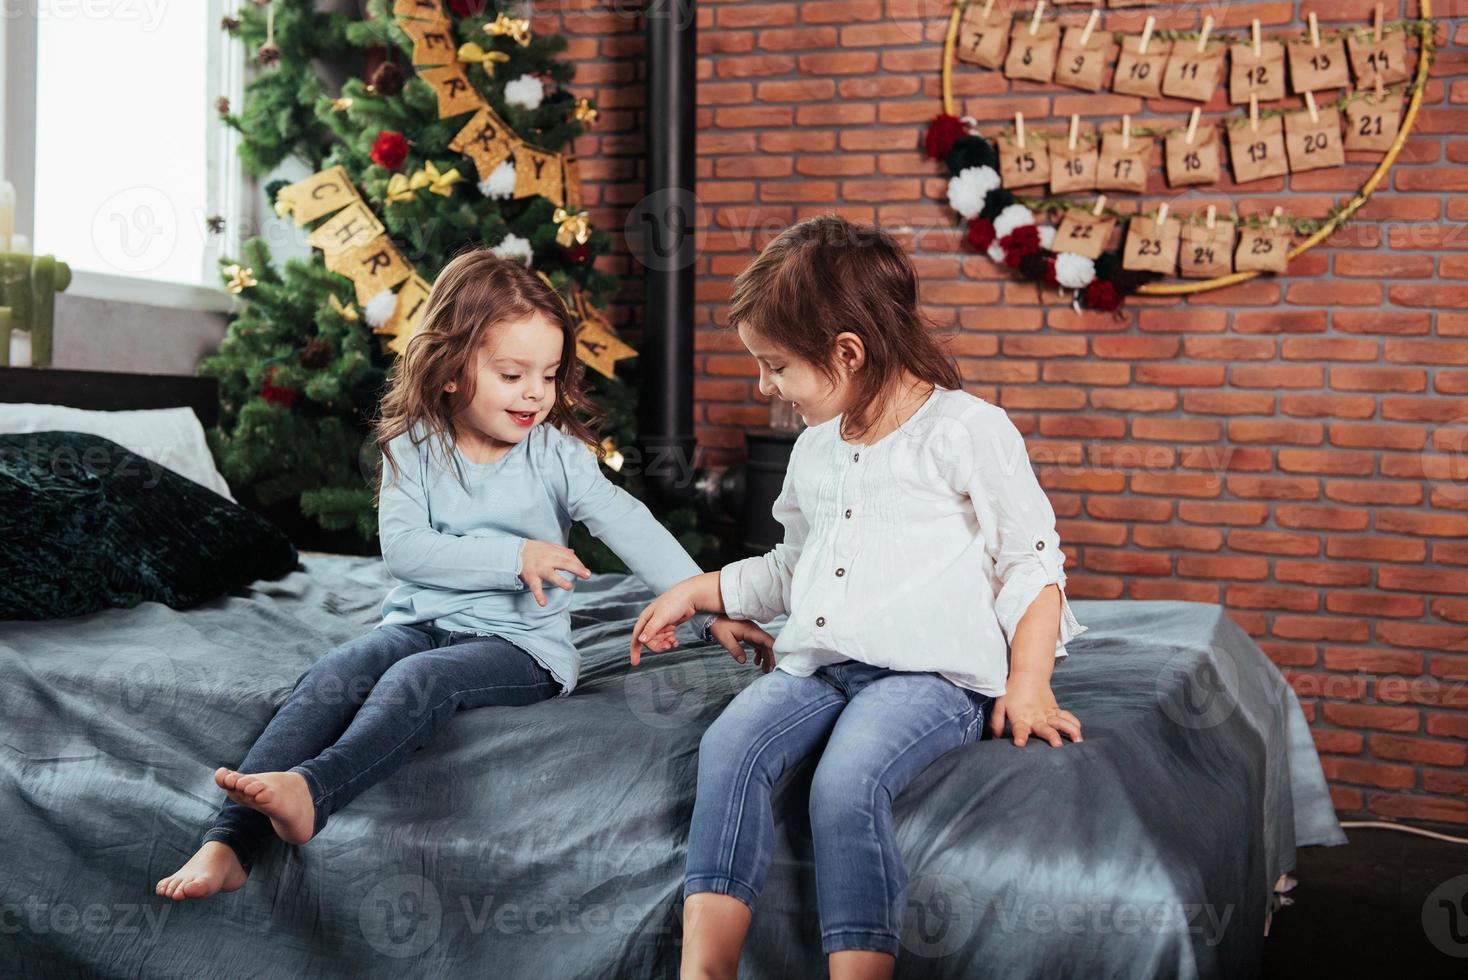 passando o tempo brincando um com o outro enquanto espera o natal. crianças senta-se na cama com fundo decorativo. concepção de ano novo foto